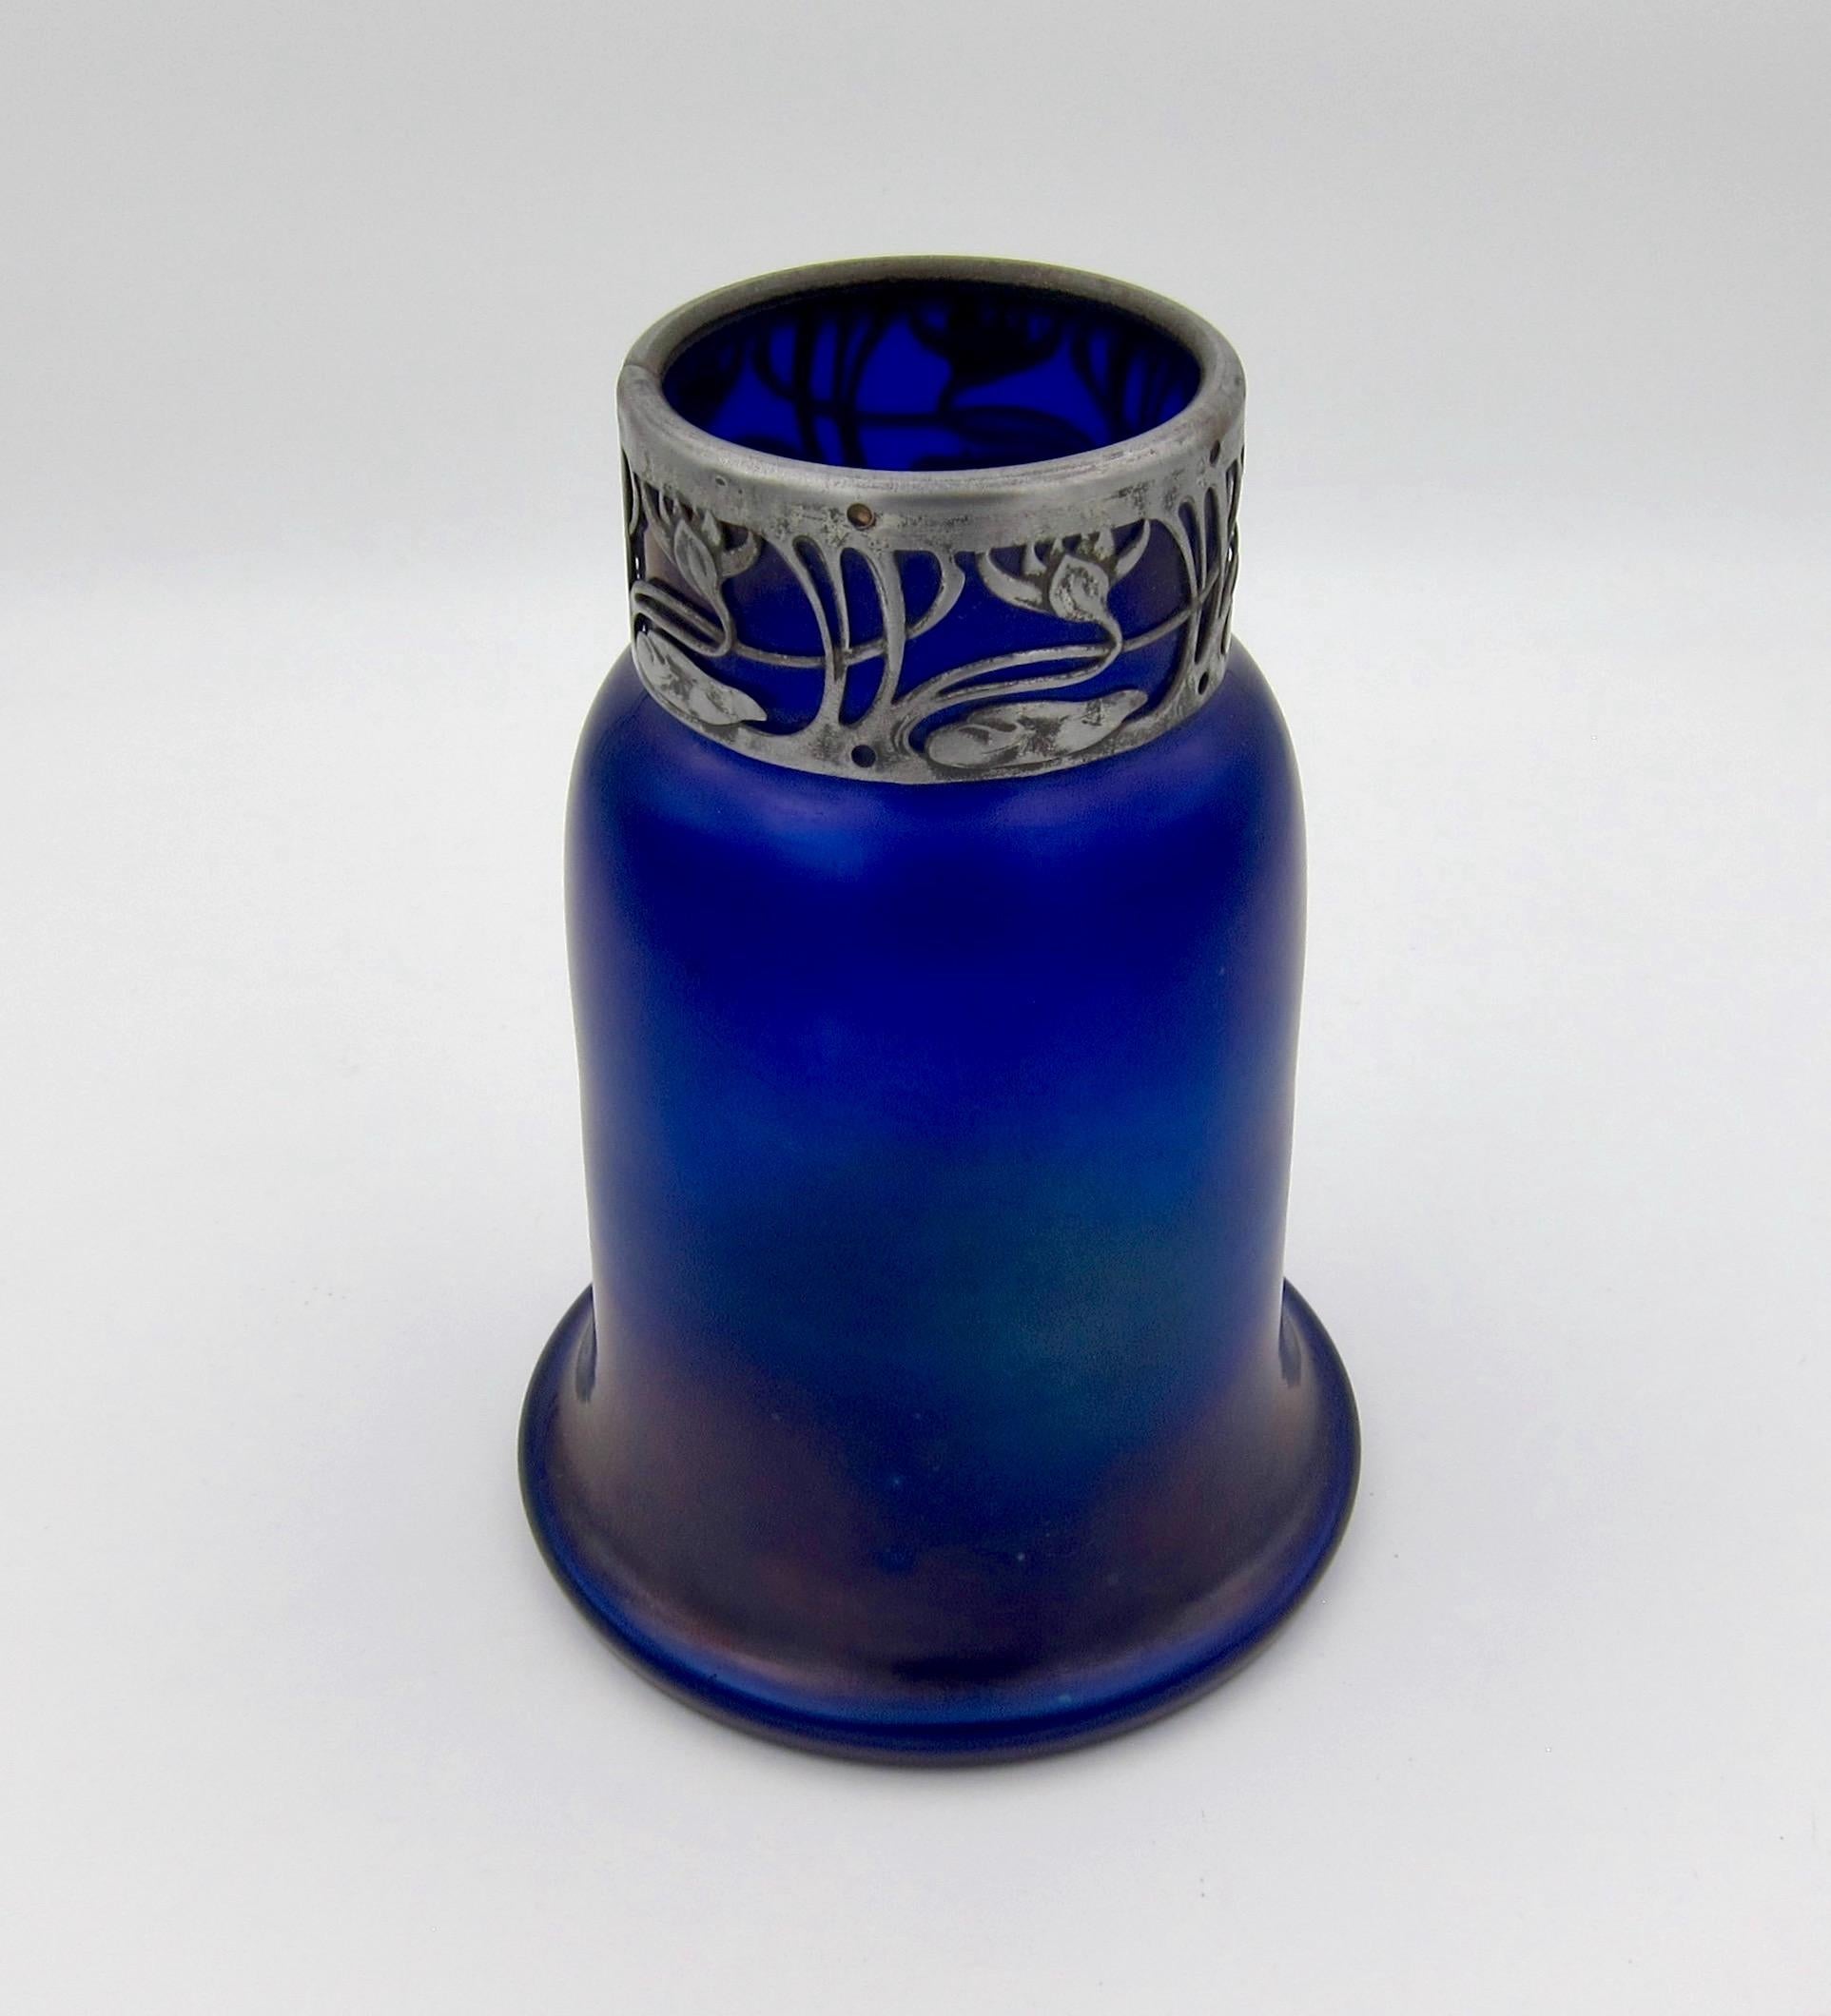 Austrian Iridescent Blue Art Glass Vase with an Art Nouveau Silver Metal Collar 1